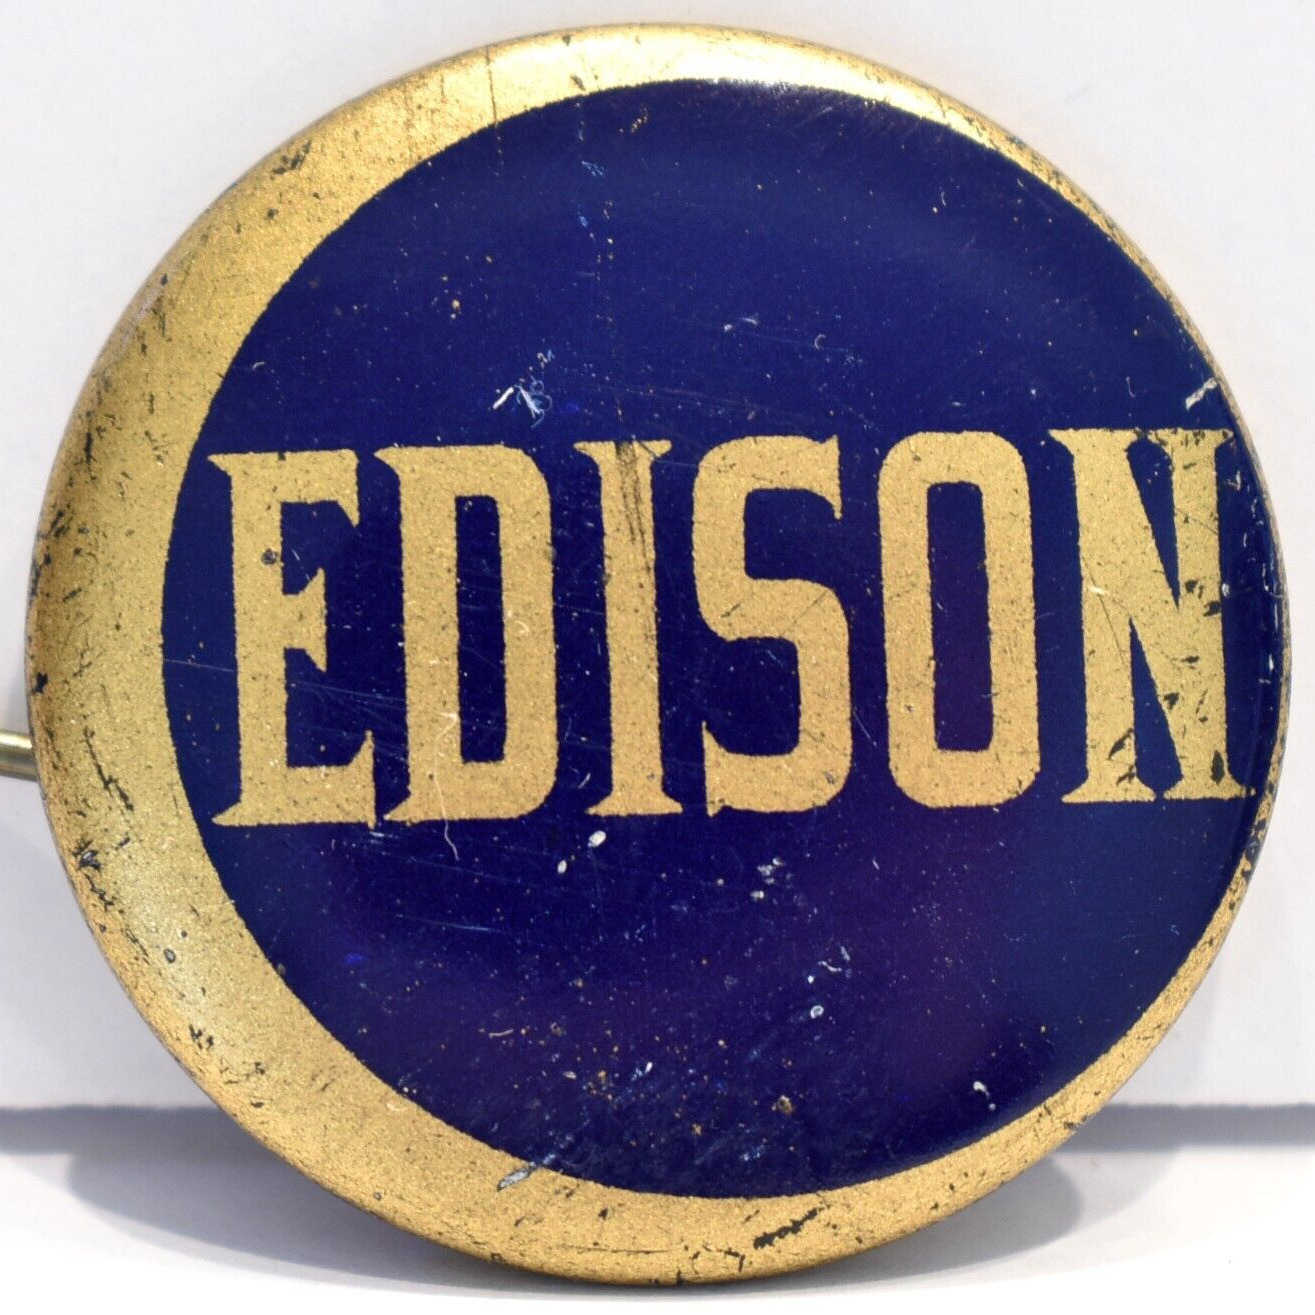 Vintage 1920s Thomas Edison High School Minneapolis Minnesota Pinback Pin Button